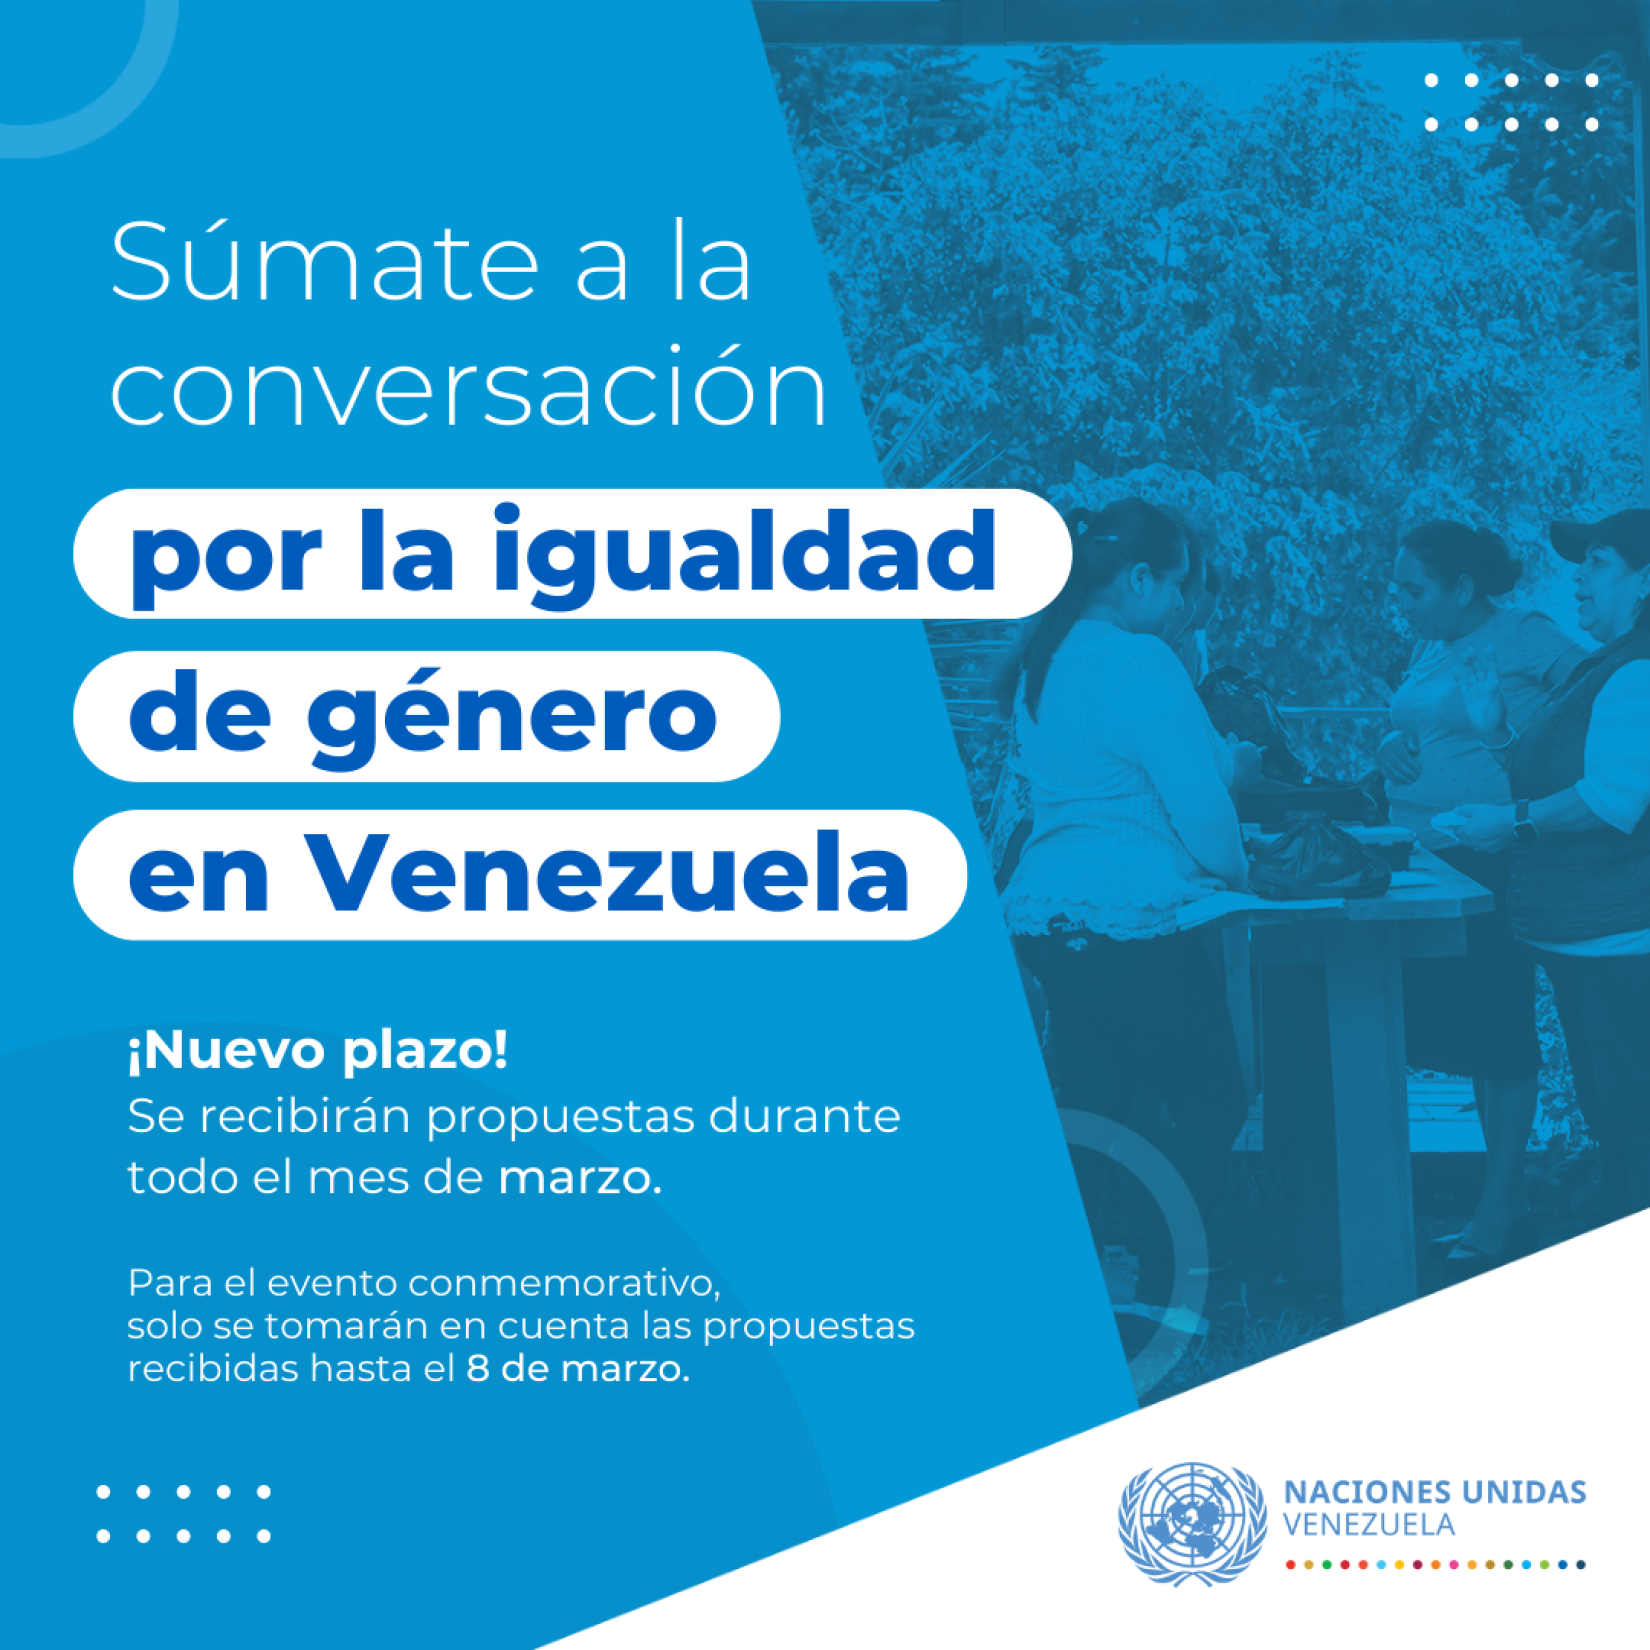 Diálogos para avanzar la igualdad en Venezuela